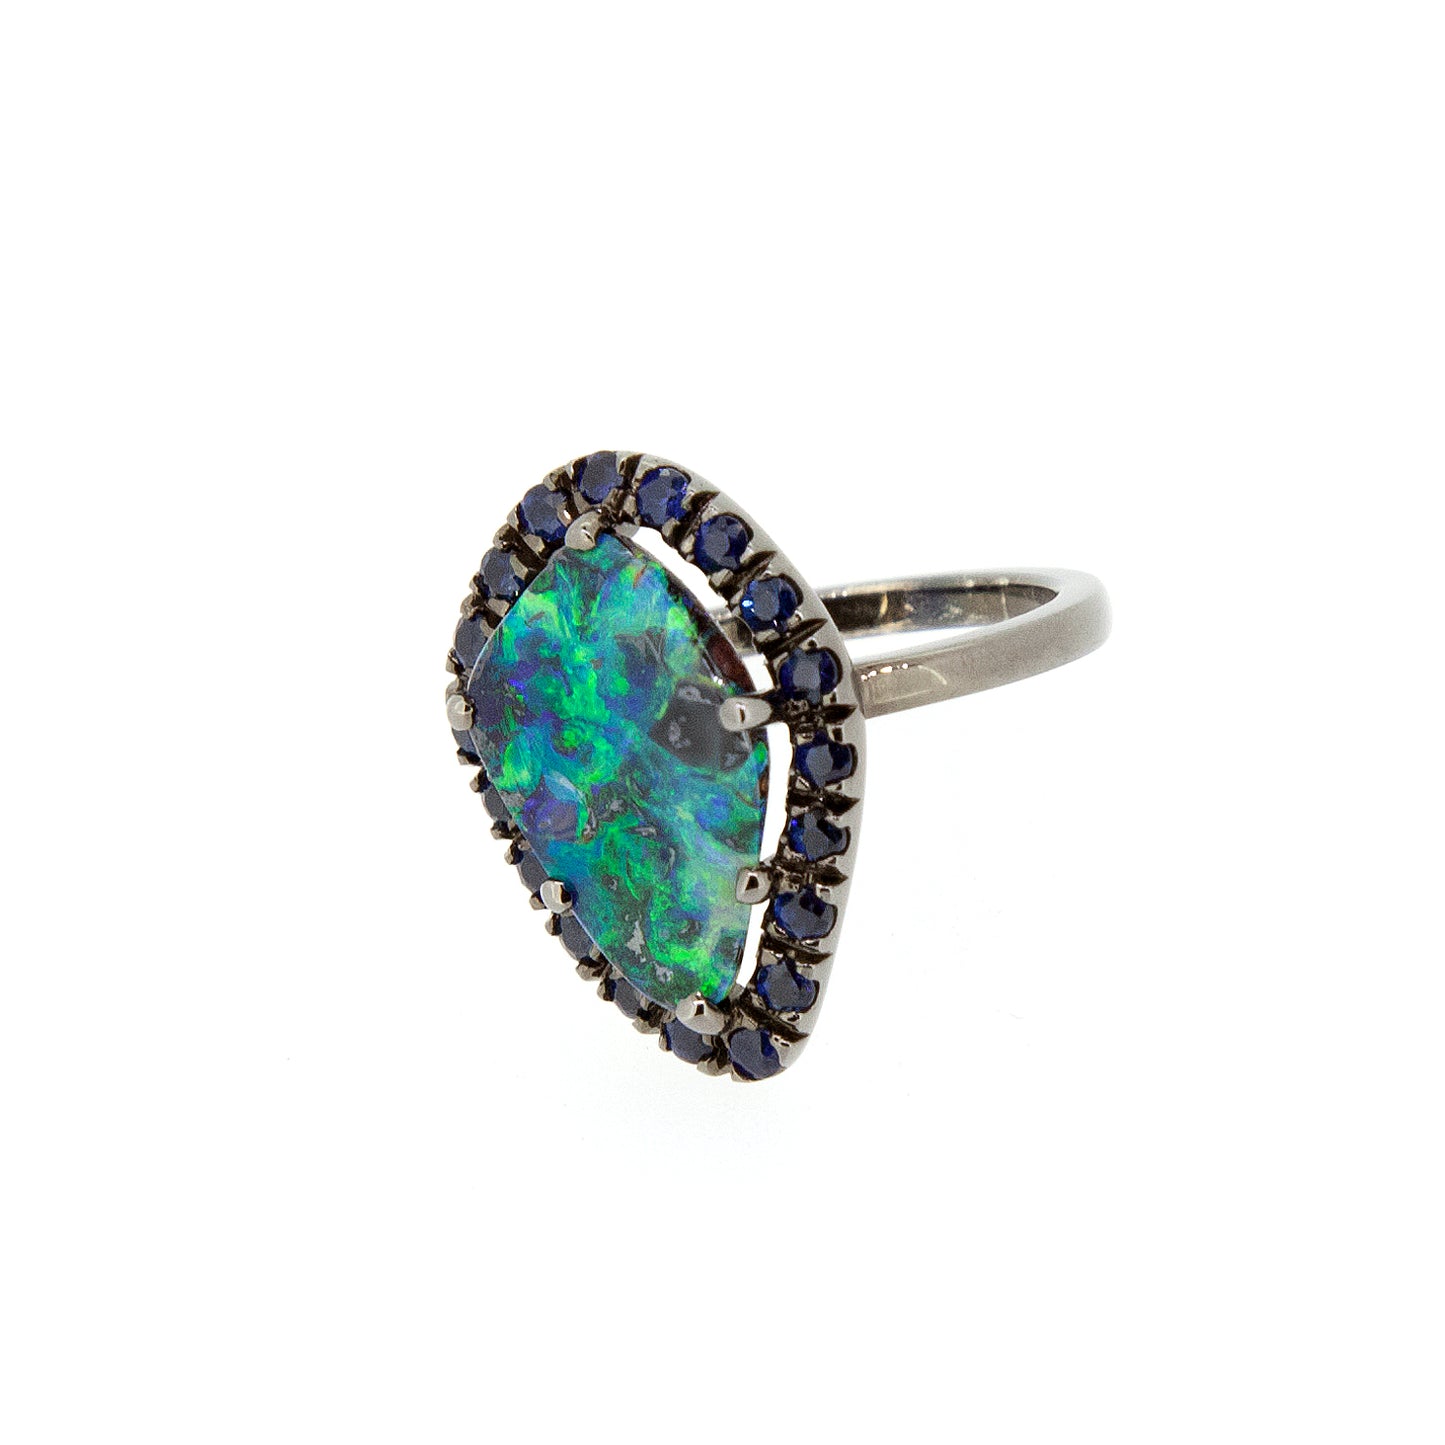 UPDATE: Fringe Ring - Boulder Opal Bright Green Ring